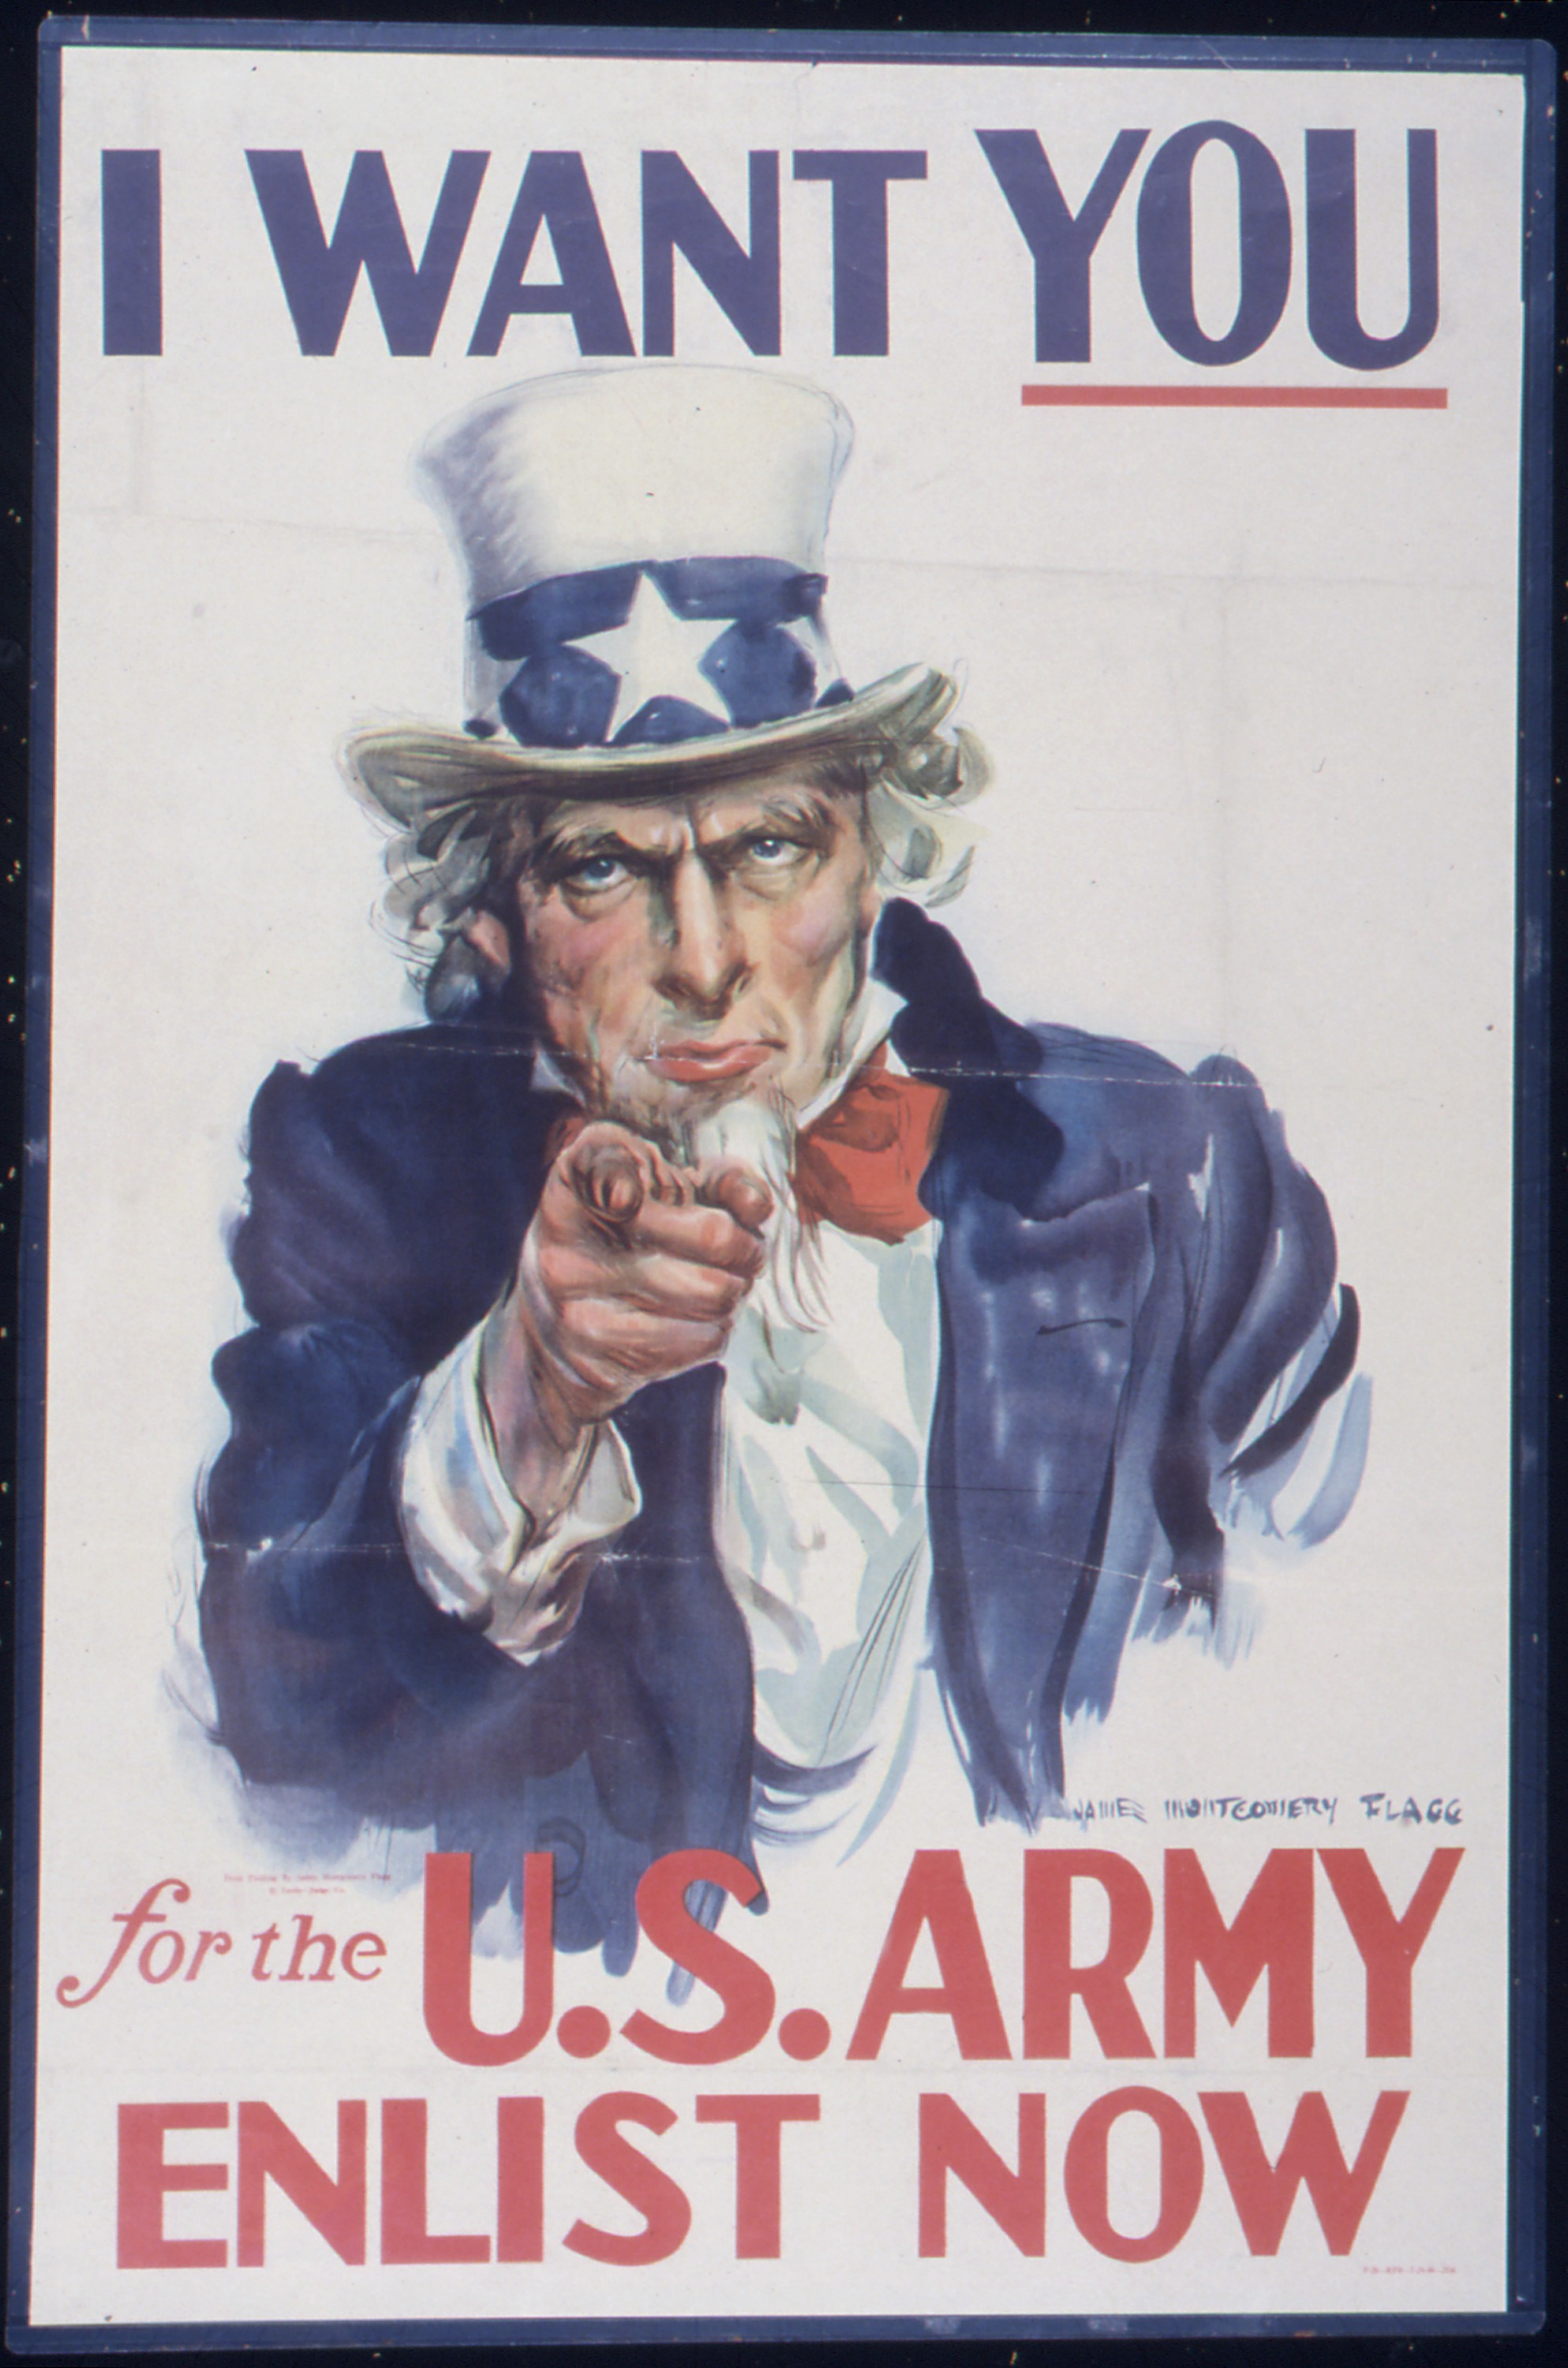 Постер сам. Джеймса Монтгомери Флегга «ты нужен американской армии»,. Джеймса Монтгомери «дядя Сэм» плакат 1917.